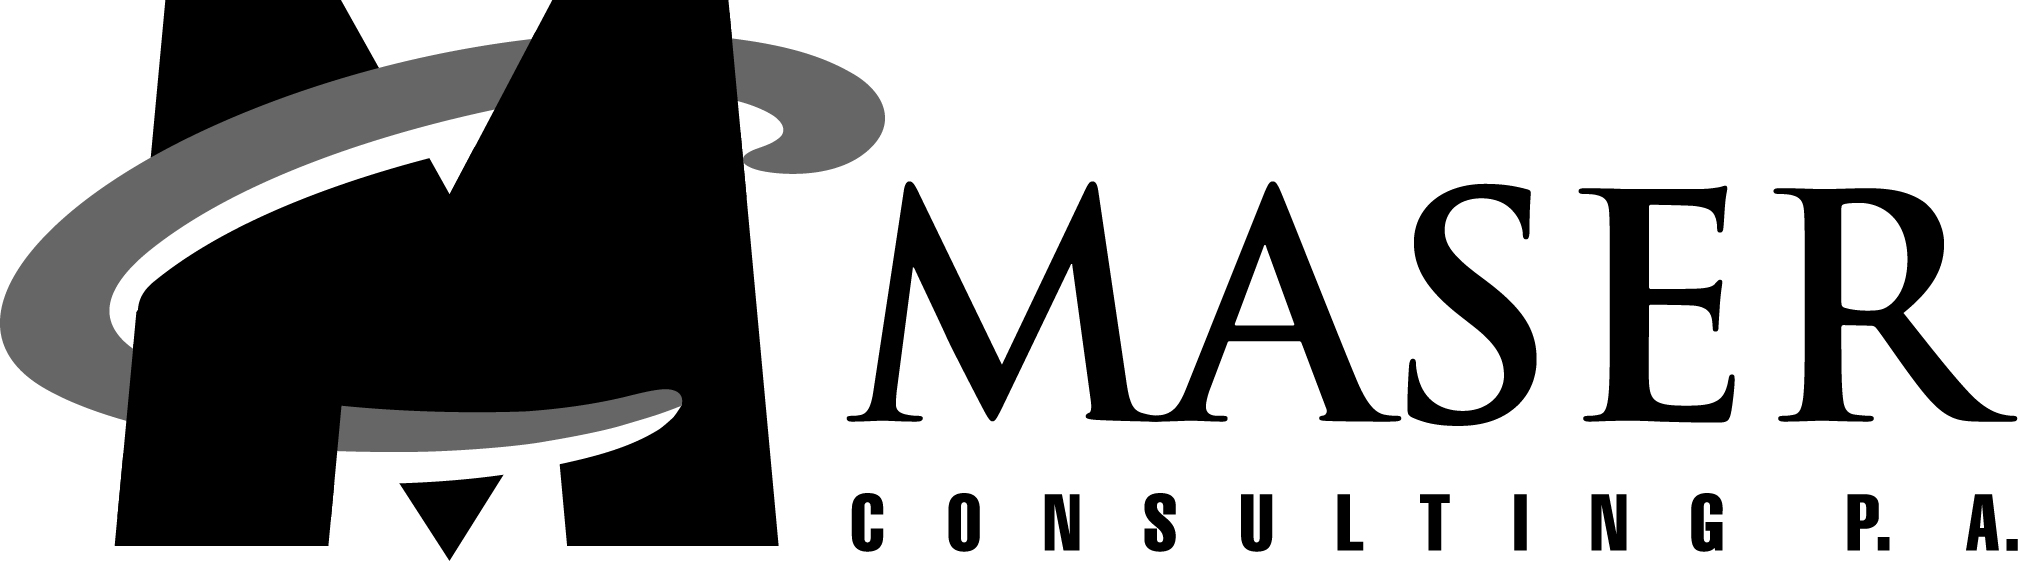 Maser Logo Final 300 Res